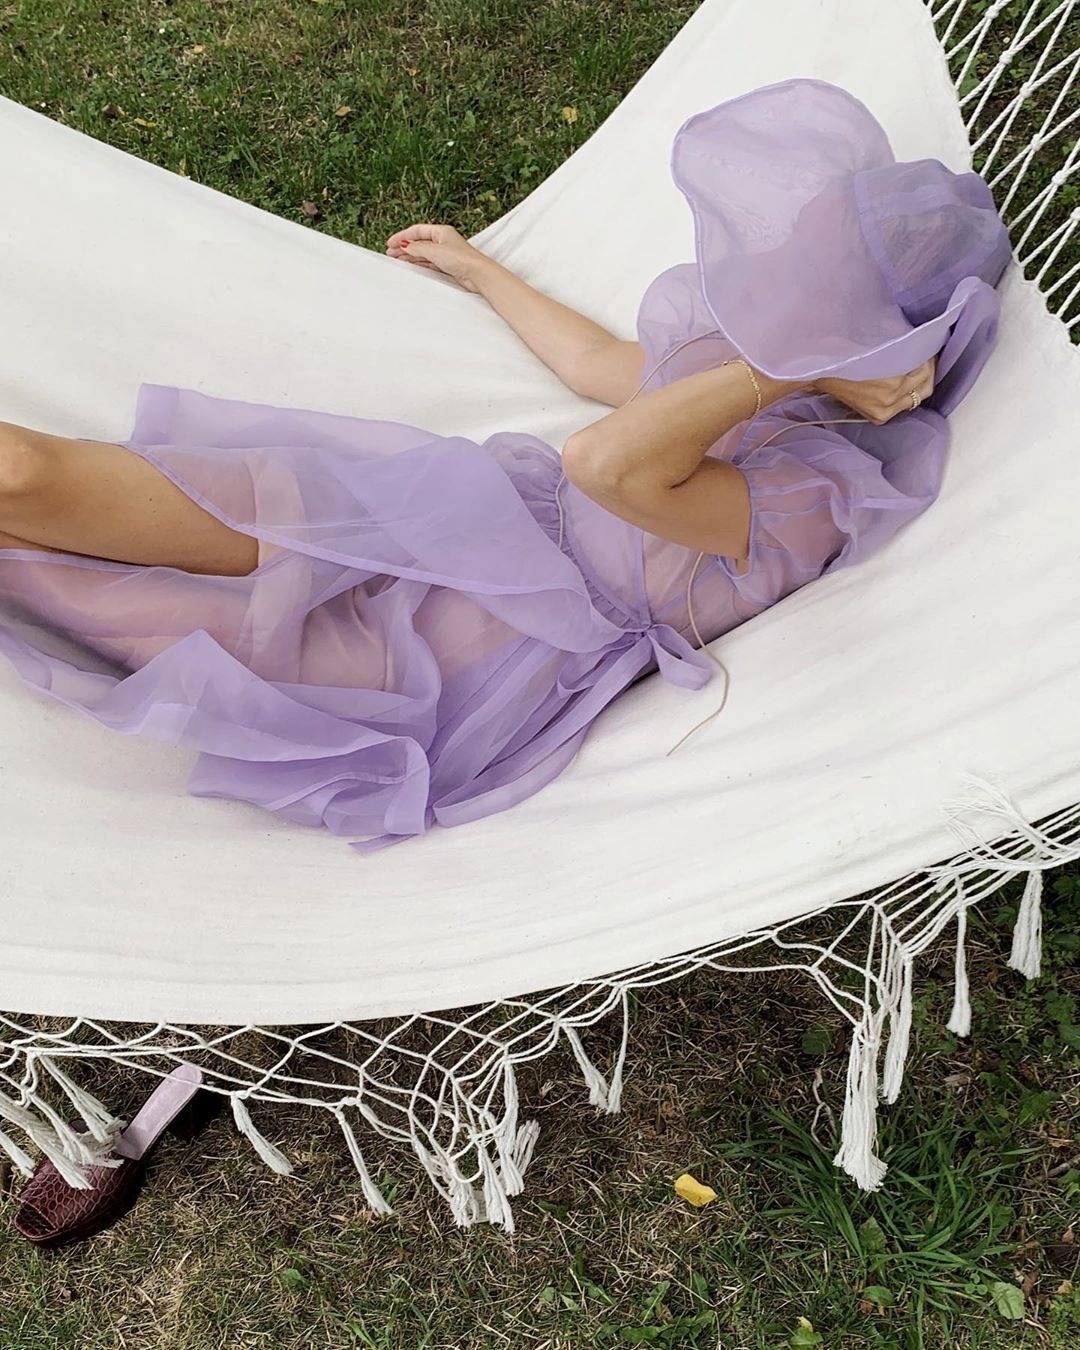 Kylie Jenner'dan Elsa Hosk'a Haftanın En İyi Moda Instagramları